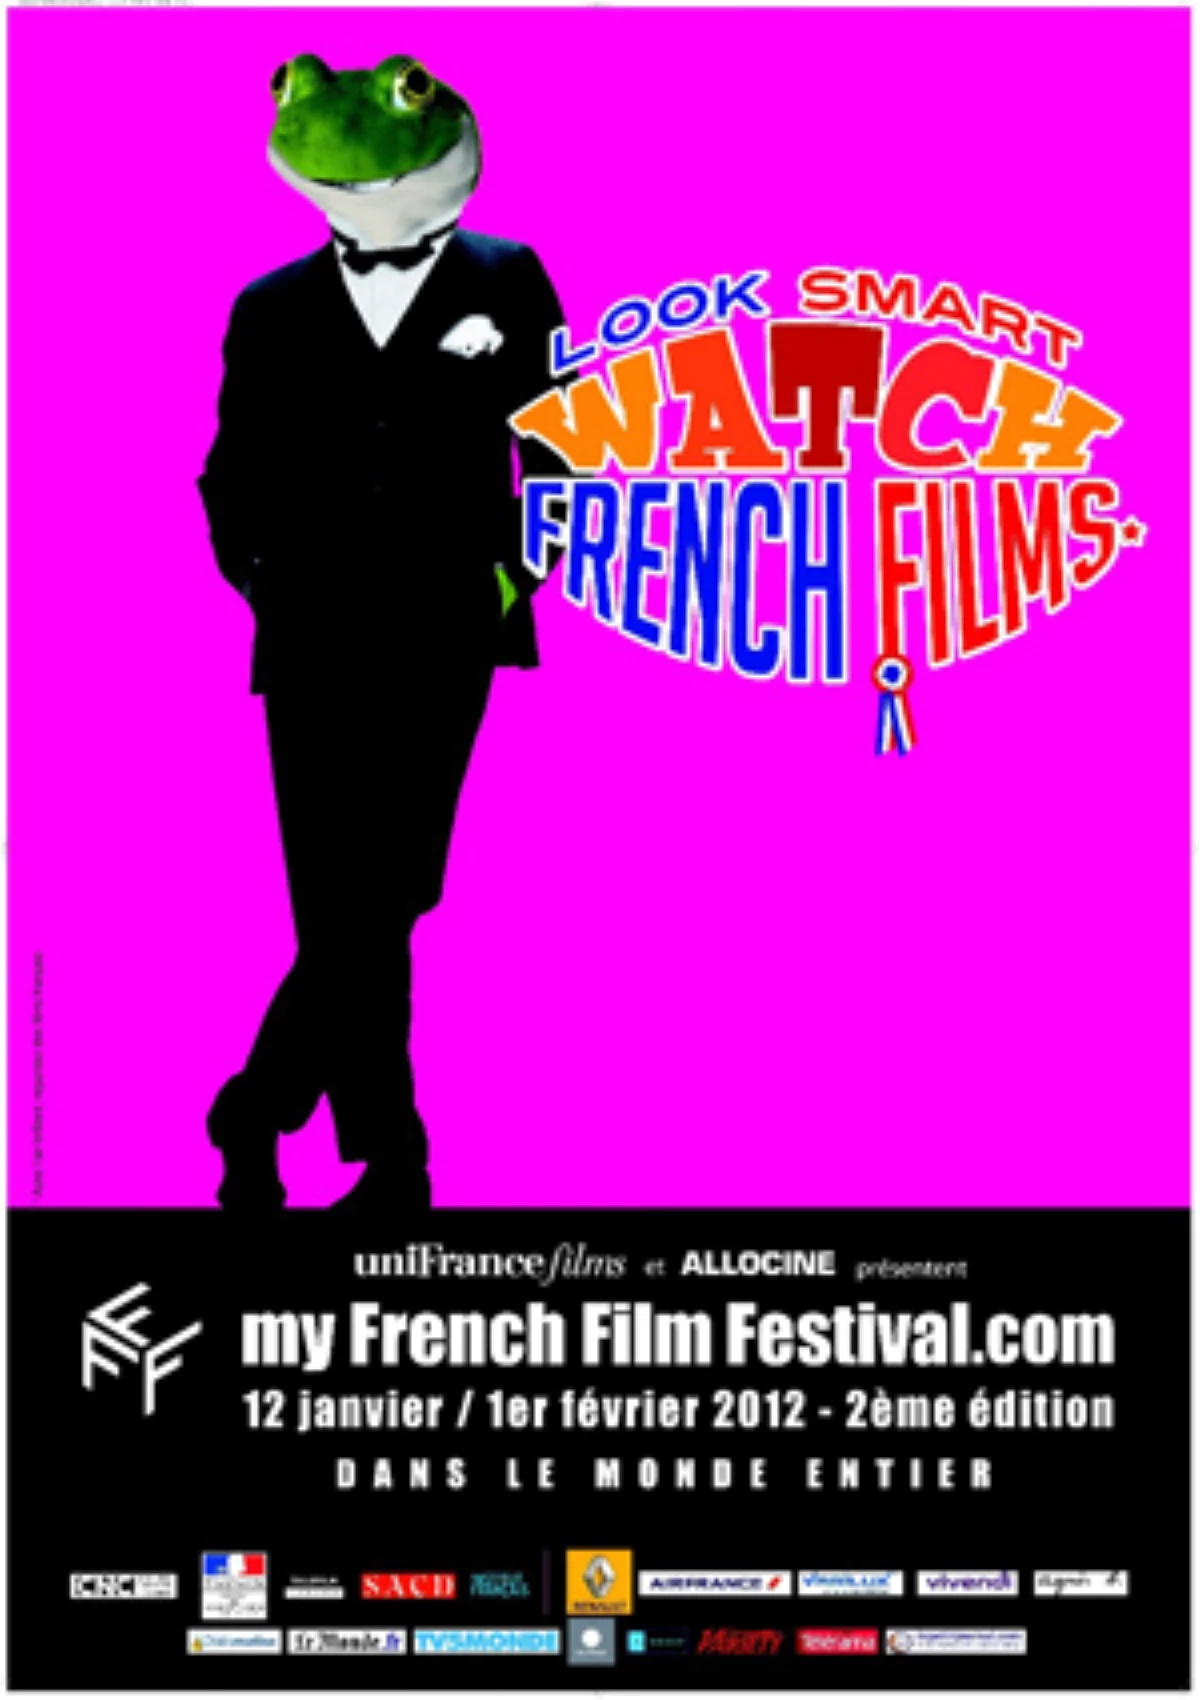 My French Film Festivali